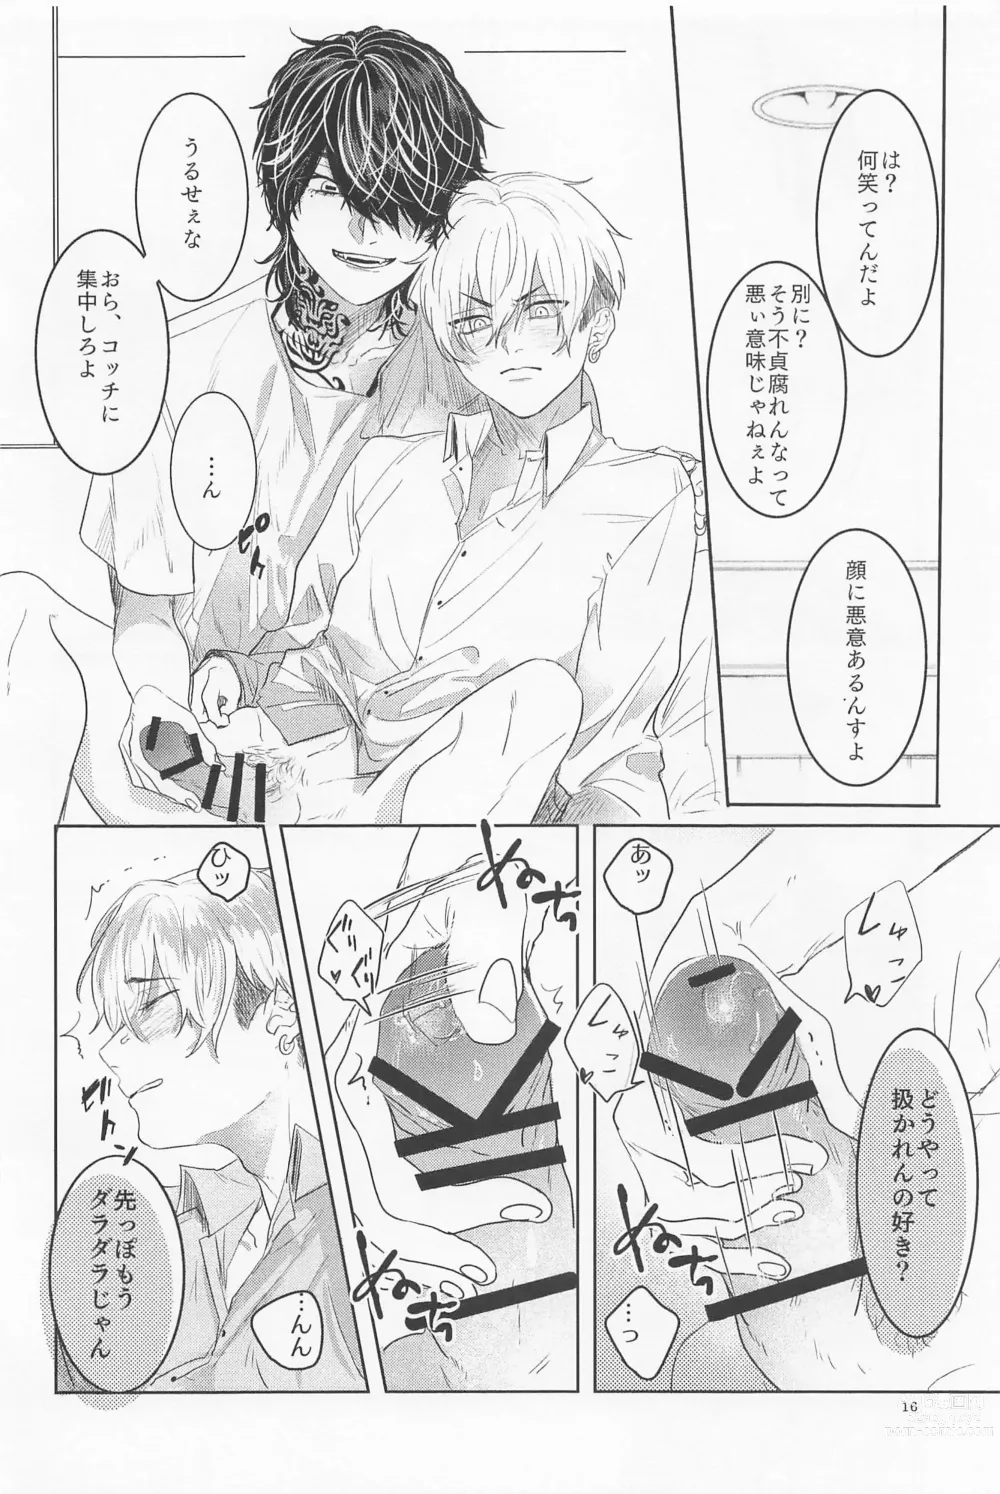 Page 15 of doujinshi Ao to Haru